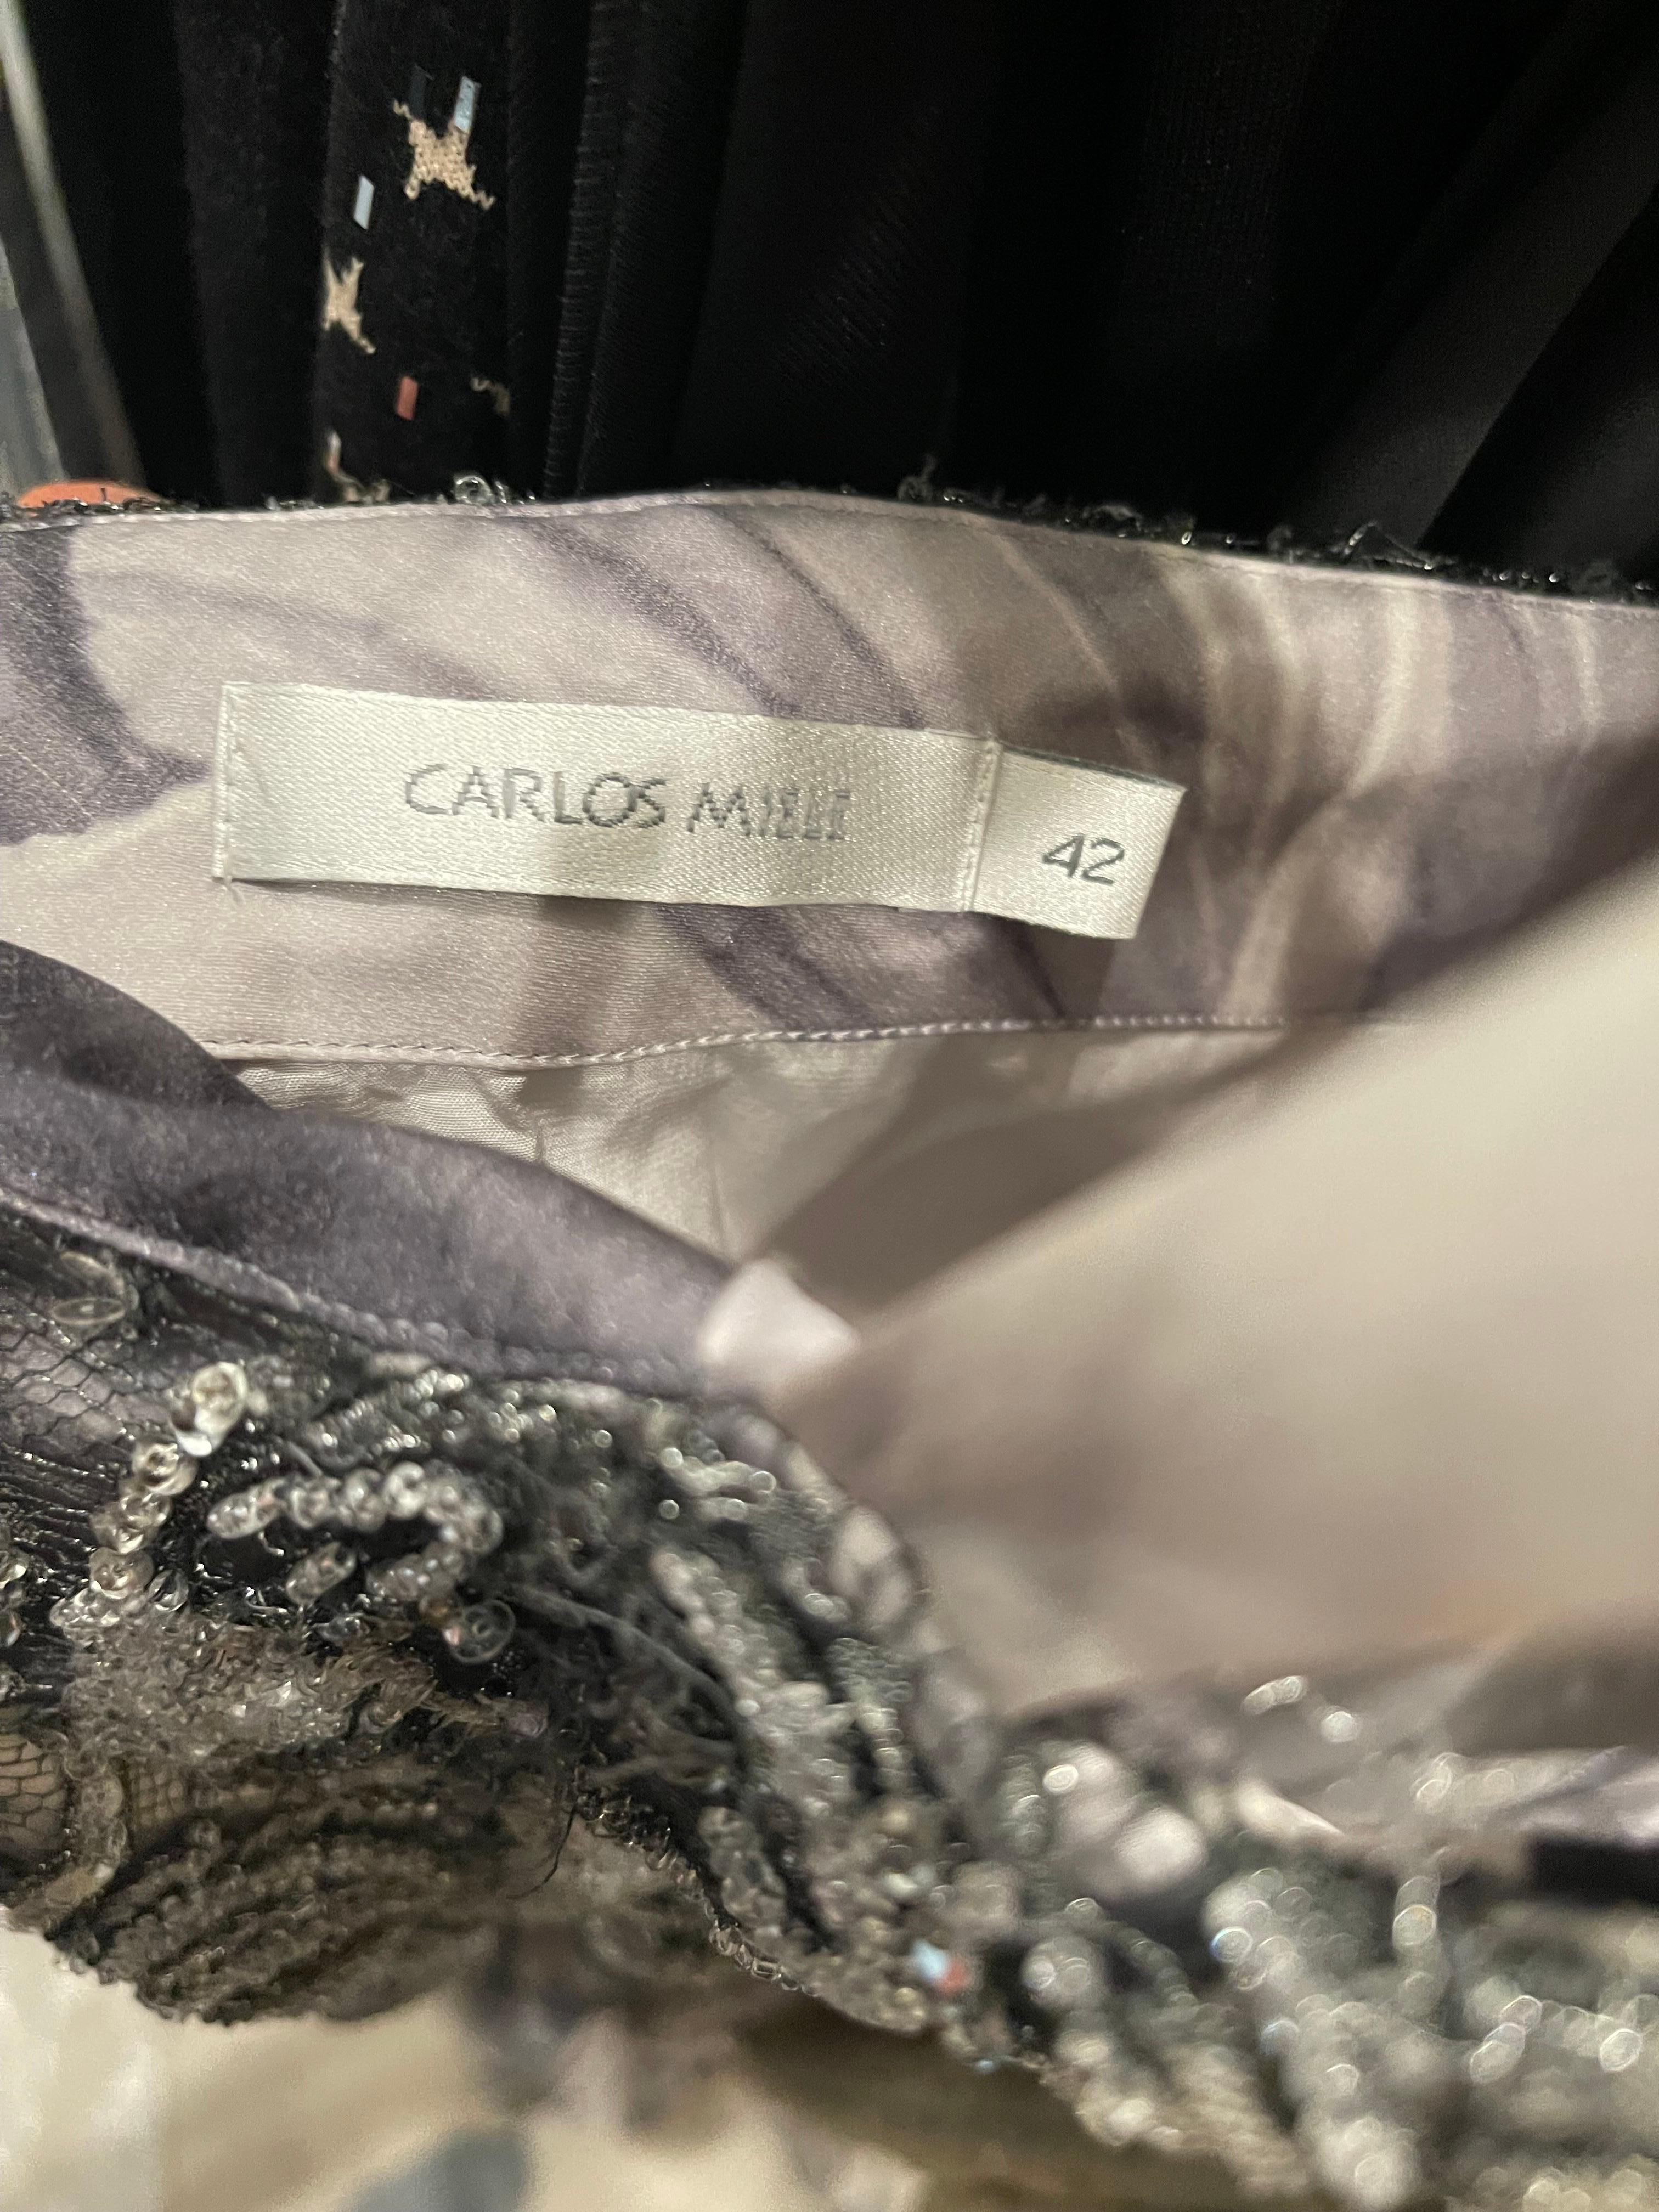 Magnifique robe de soirée CARLOS MIELE Printemps 2009 ! Robe de soirée grise, noire et blanche à imprimé abstrait de fleurs et de roses ! Cette robe a été conçue avec la plus grande attention aux détails. On s'en aperçoit immédiatement lorsqu'on le